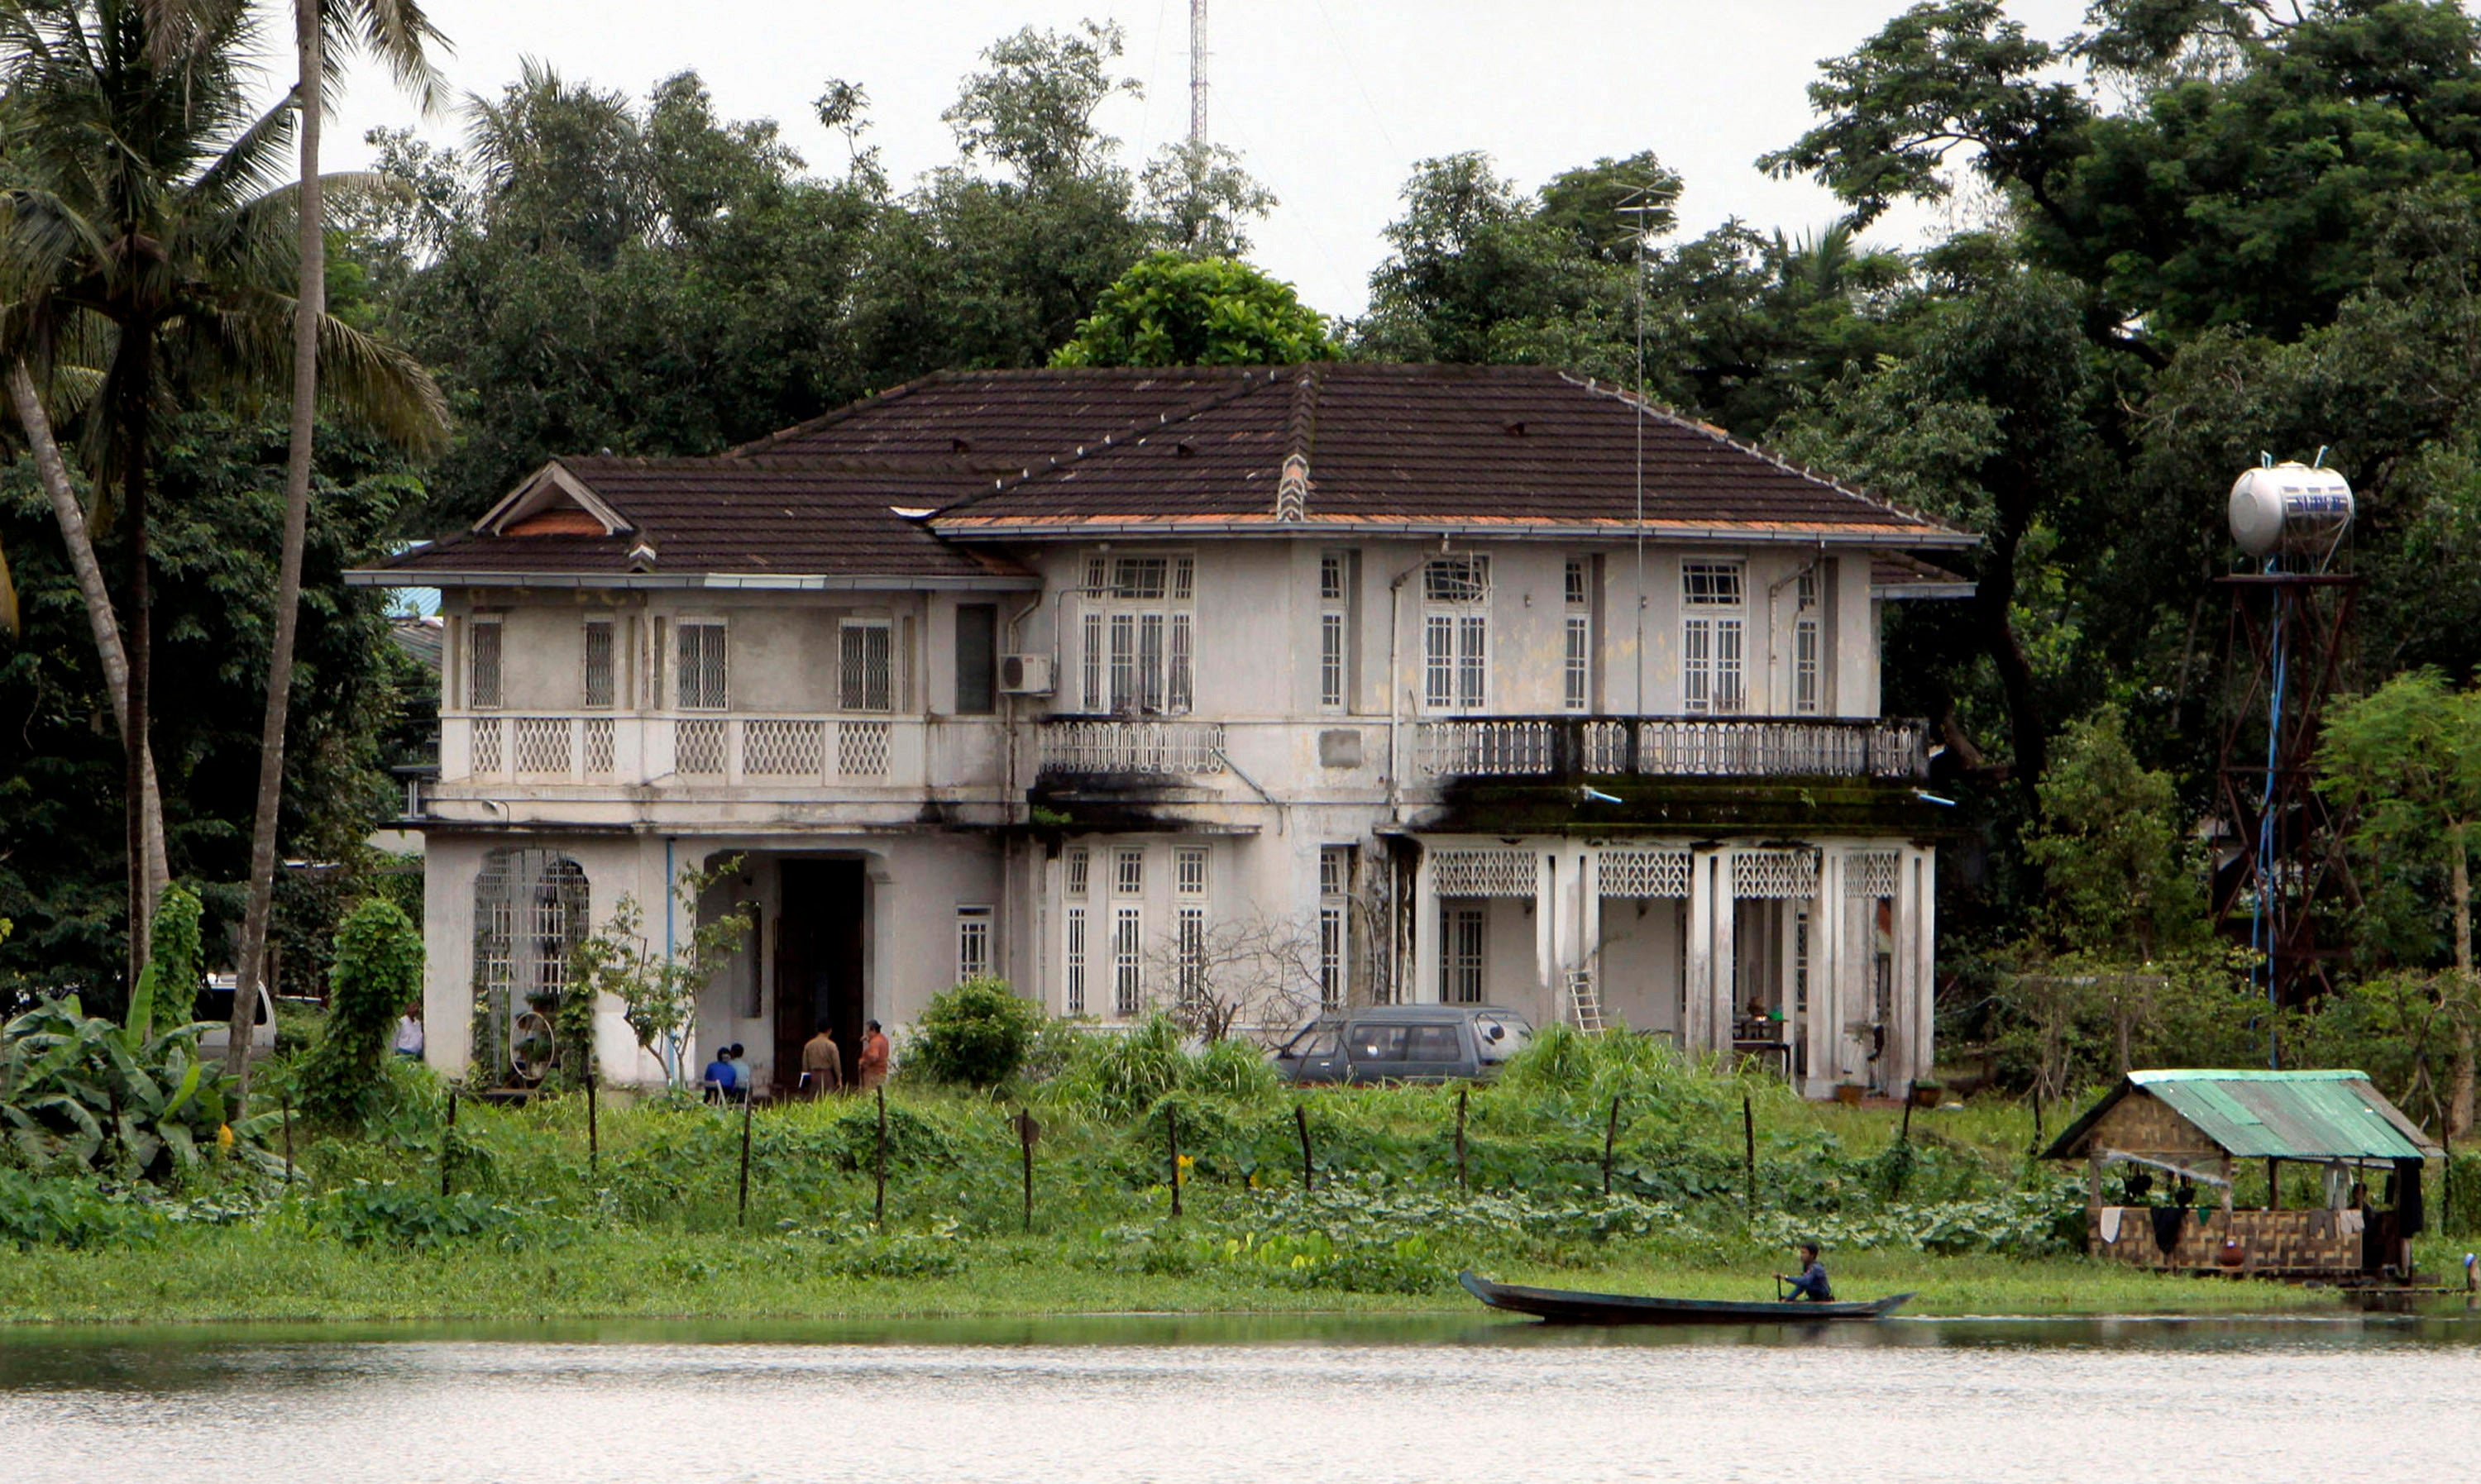 The lakeside home of Myanmar’s pro-democracy leader Aung San Suu Kyi in Yangon, Myanmar, seen here in August 2009